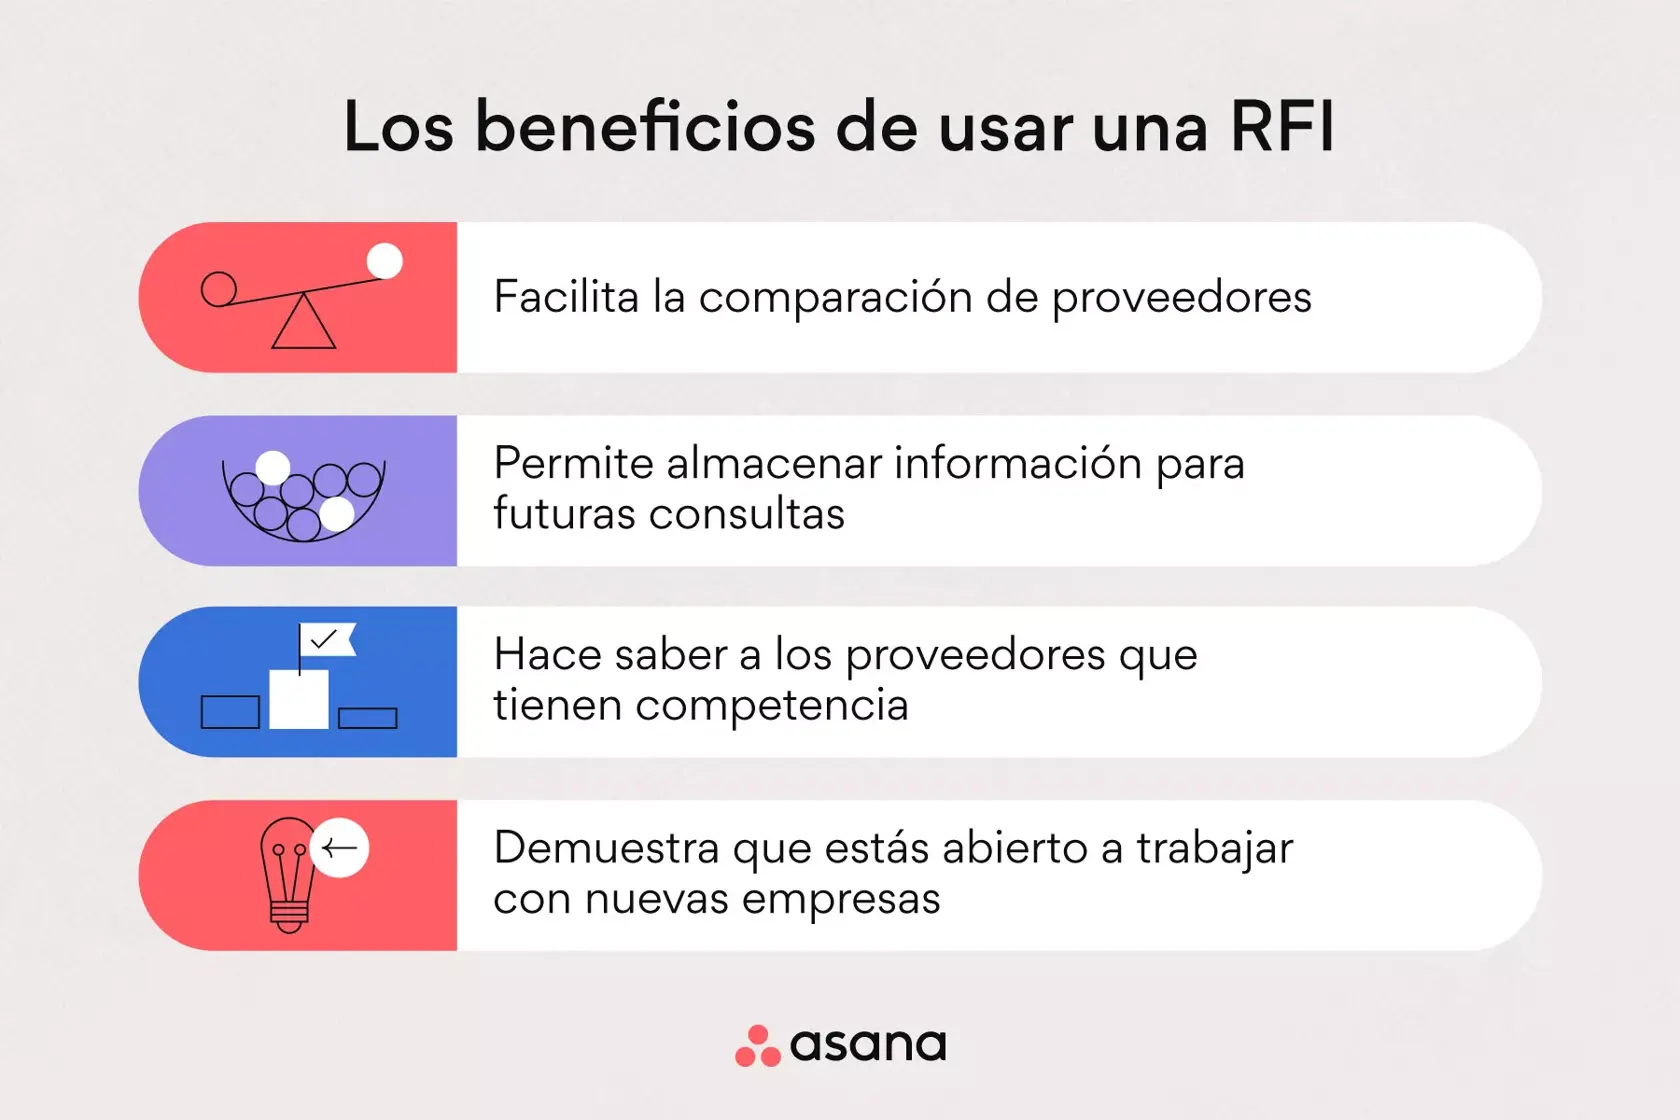 Los beneficios de usar una RFI